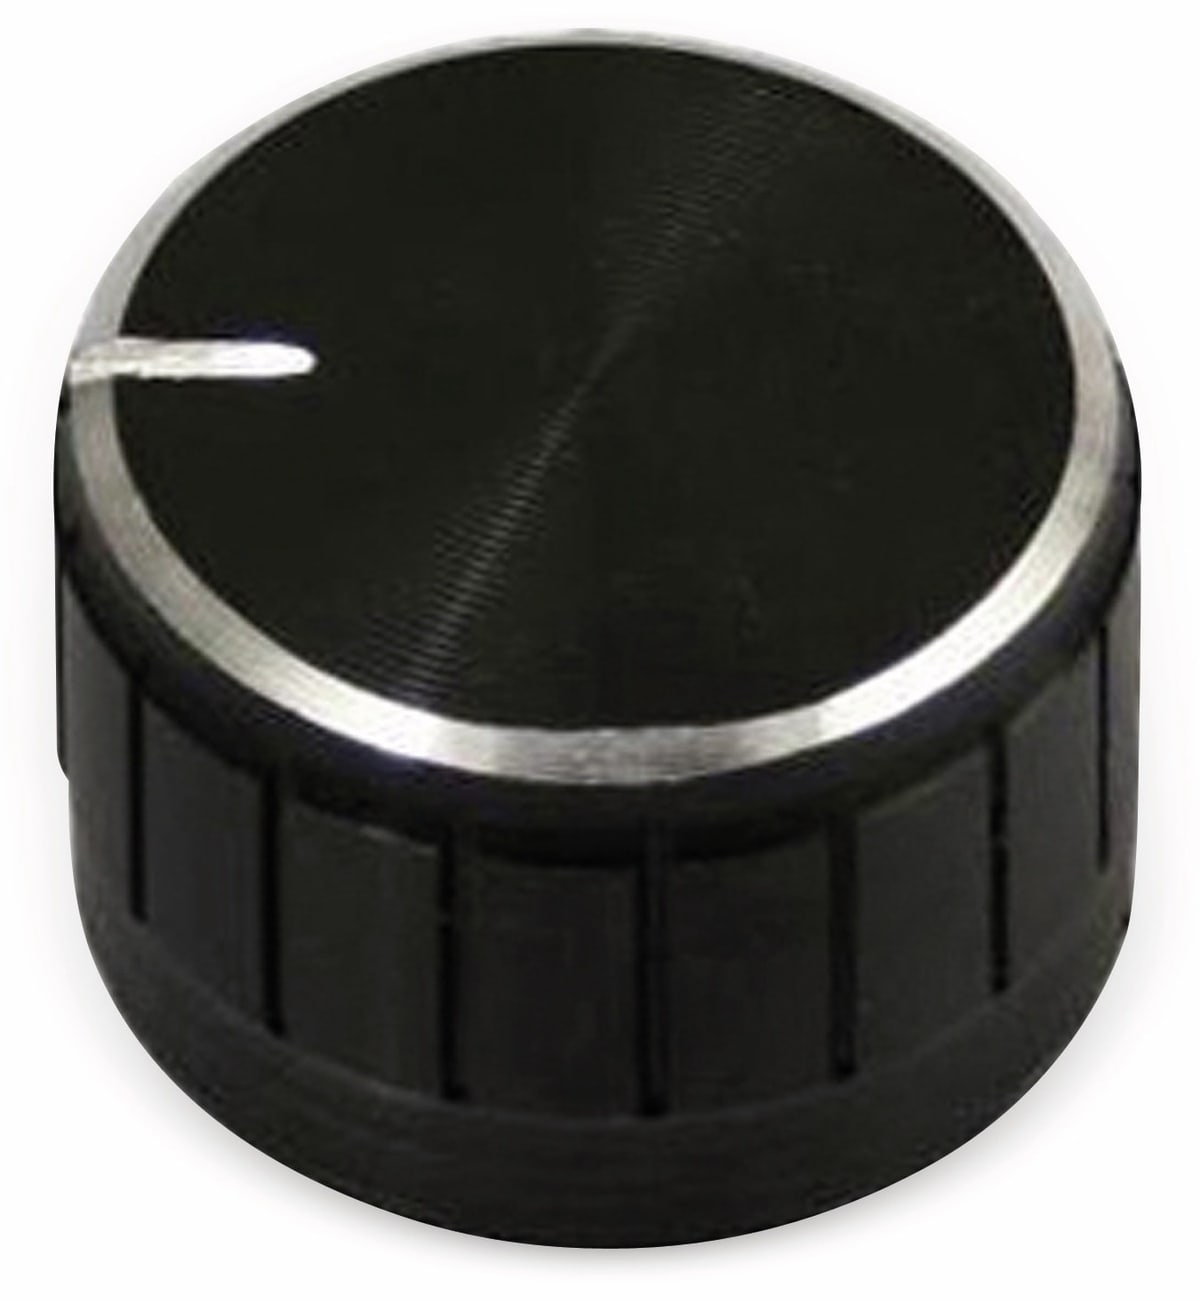 Aluminium-Drehknopf mit Zeigernase, 23x17 mm, schwarz von Pollin-Choice